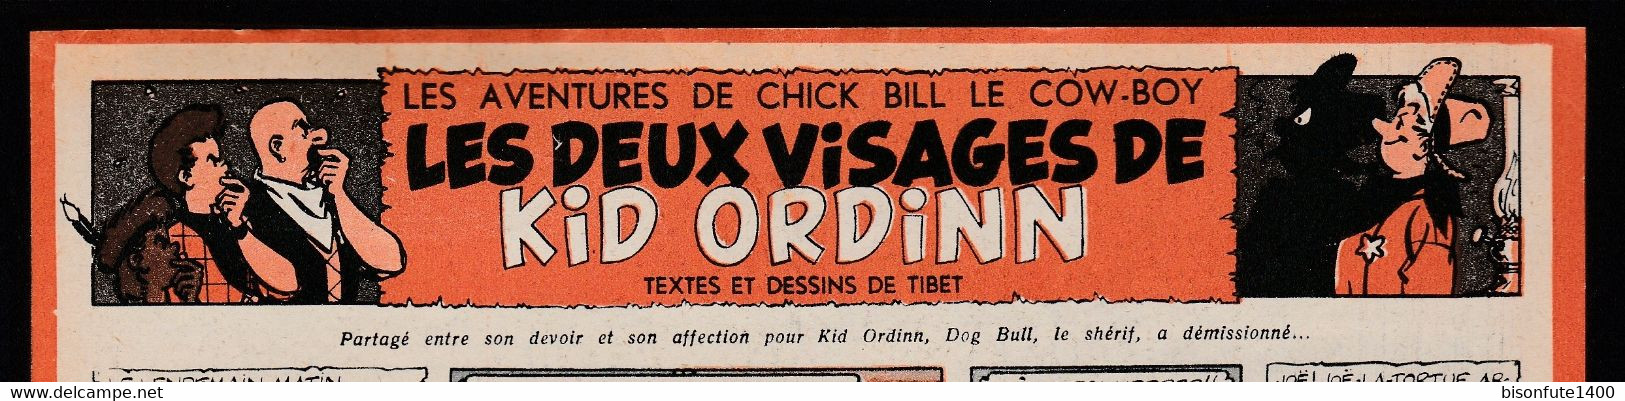 Bandeau Titre De Chick Bill "Les Deux Visages De Kid Ordin" Datant De 1956 Et Inédit Dans Les Bandes Dessinées En Album. - Chick Bill